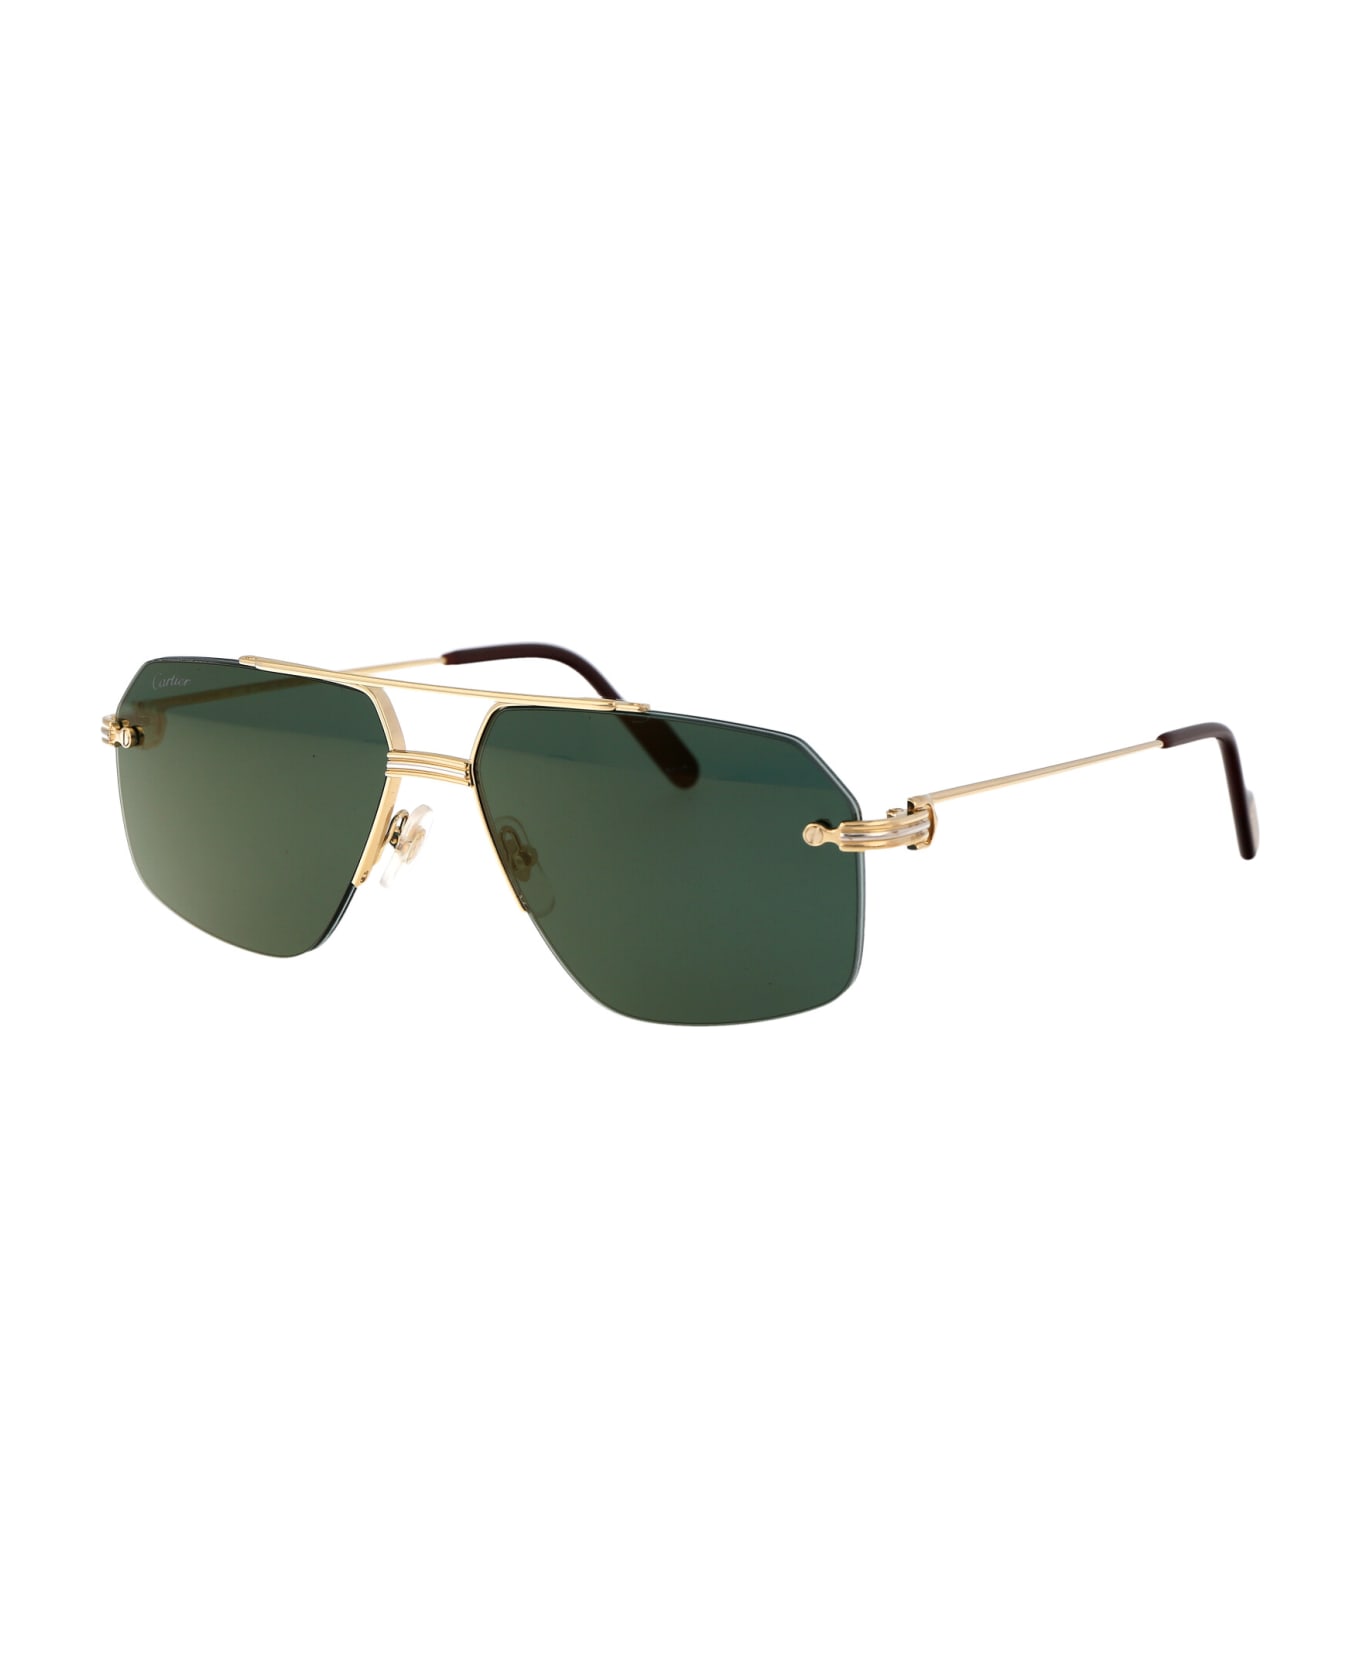 Cartier Eyewear Ct0426s Sunglasses - 002 GOLD GOLD GREEN